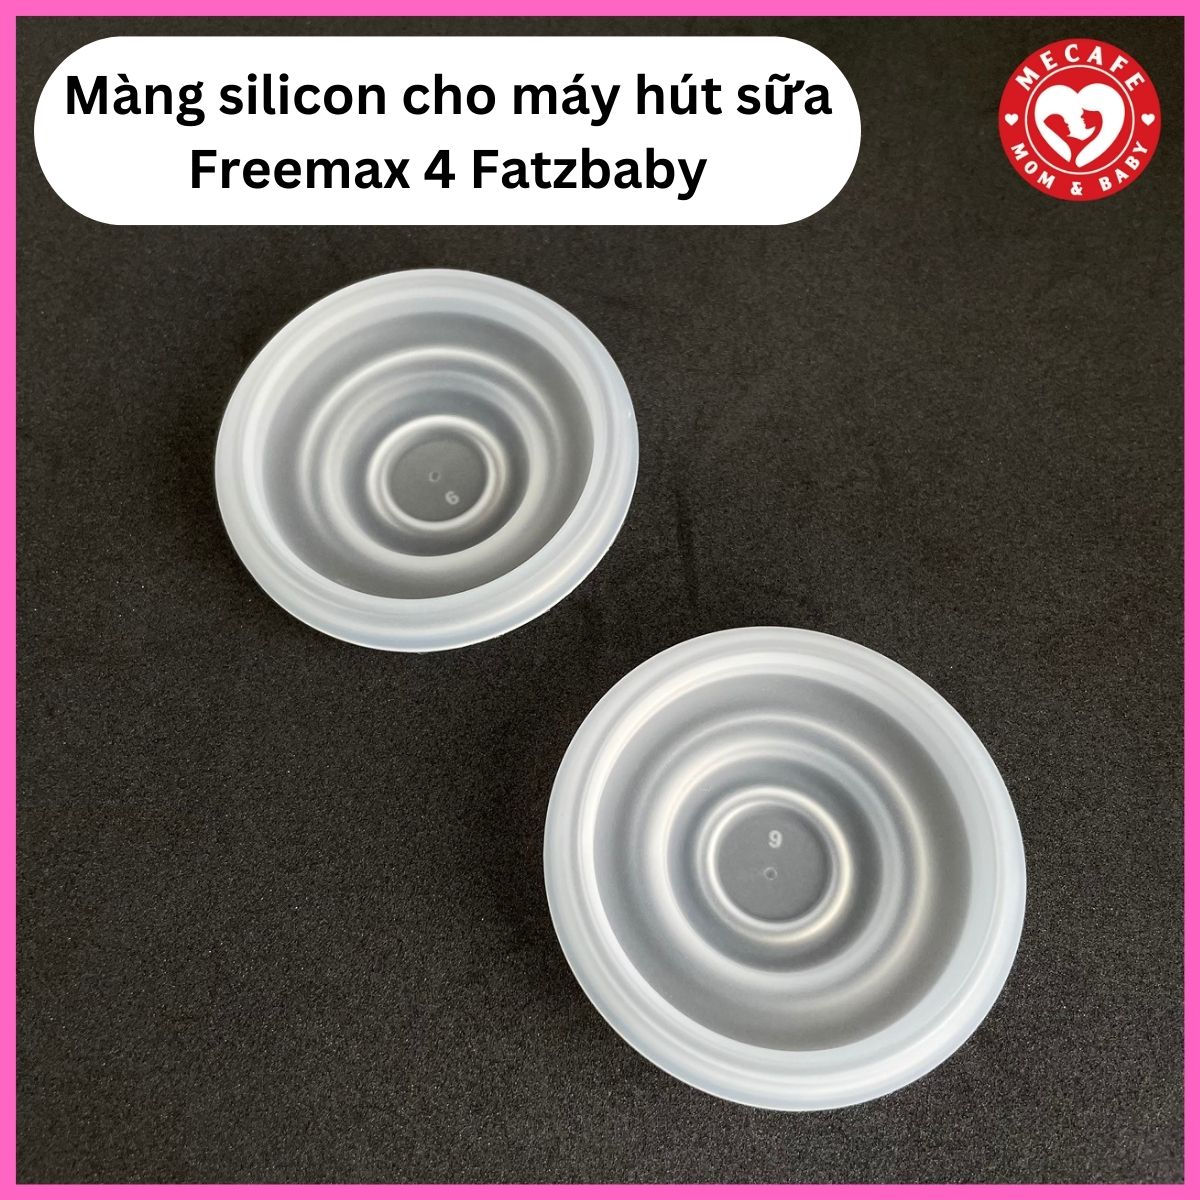 Màng silicon cho máy hút sữa Freemax 4 fatzbaby FB1276RH